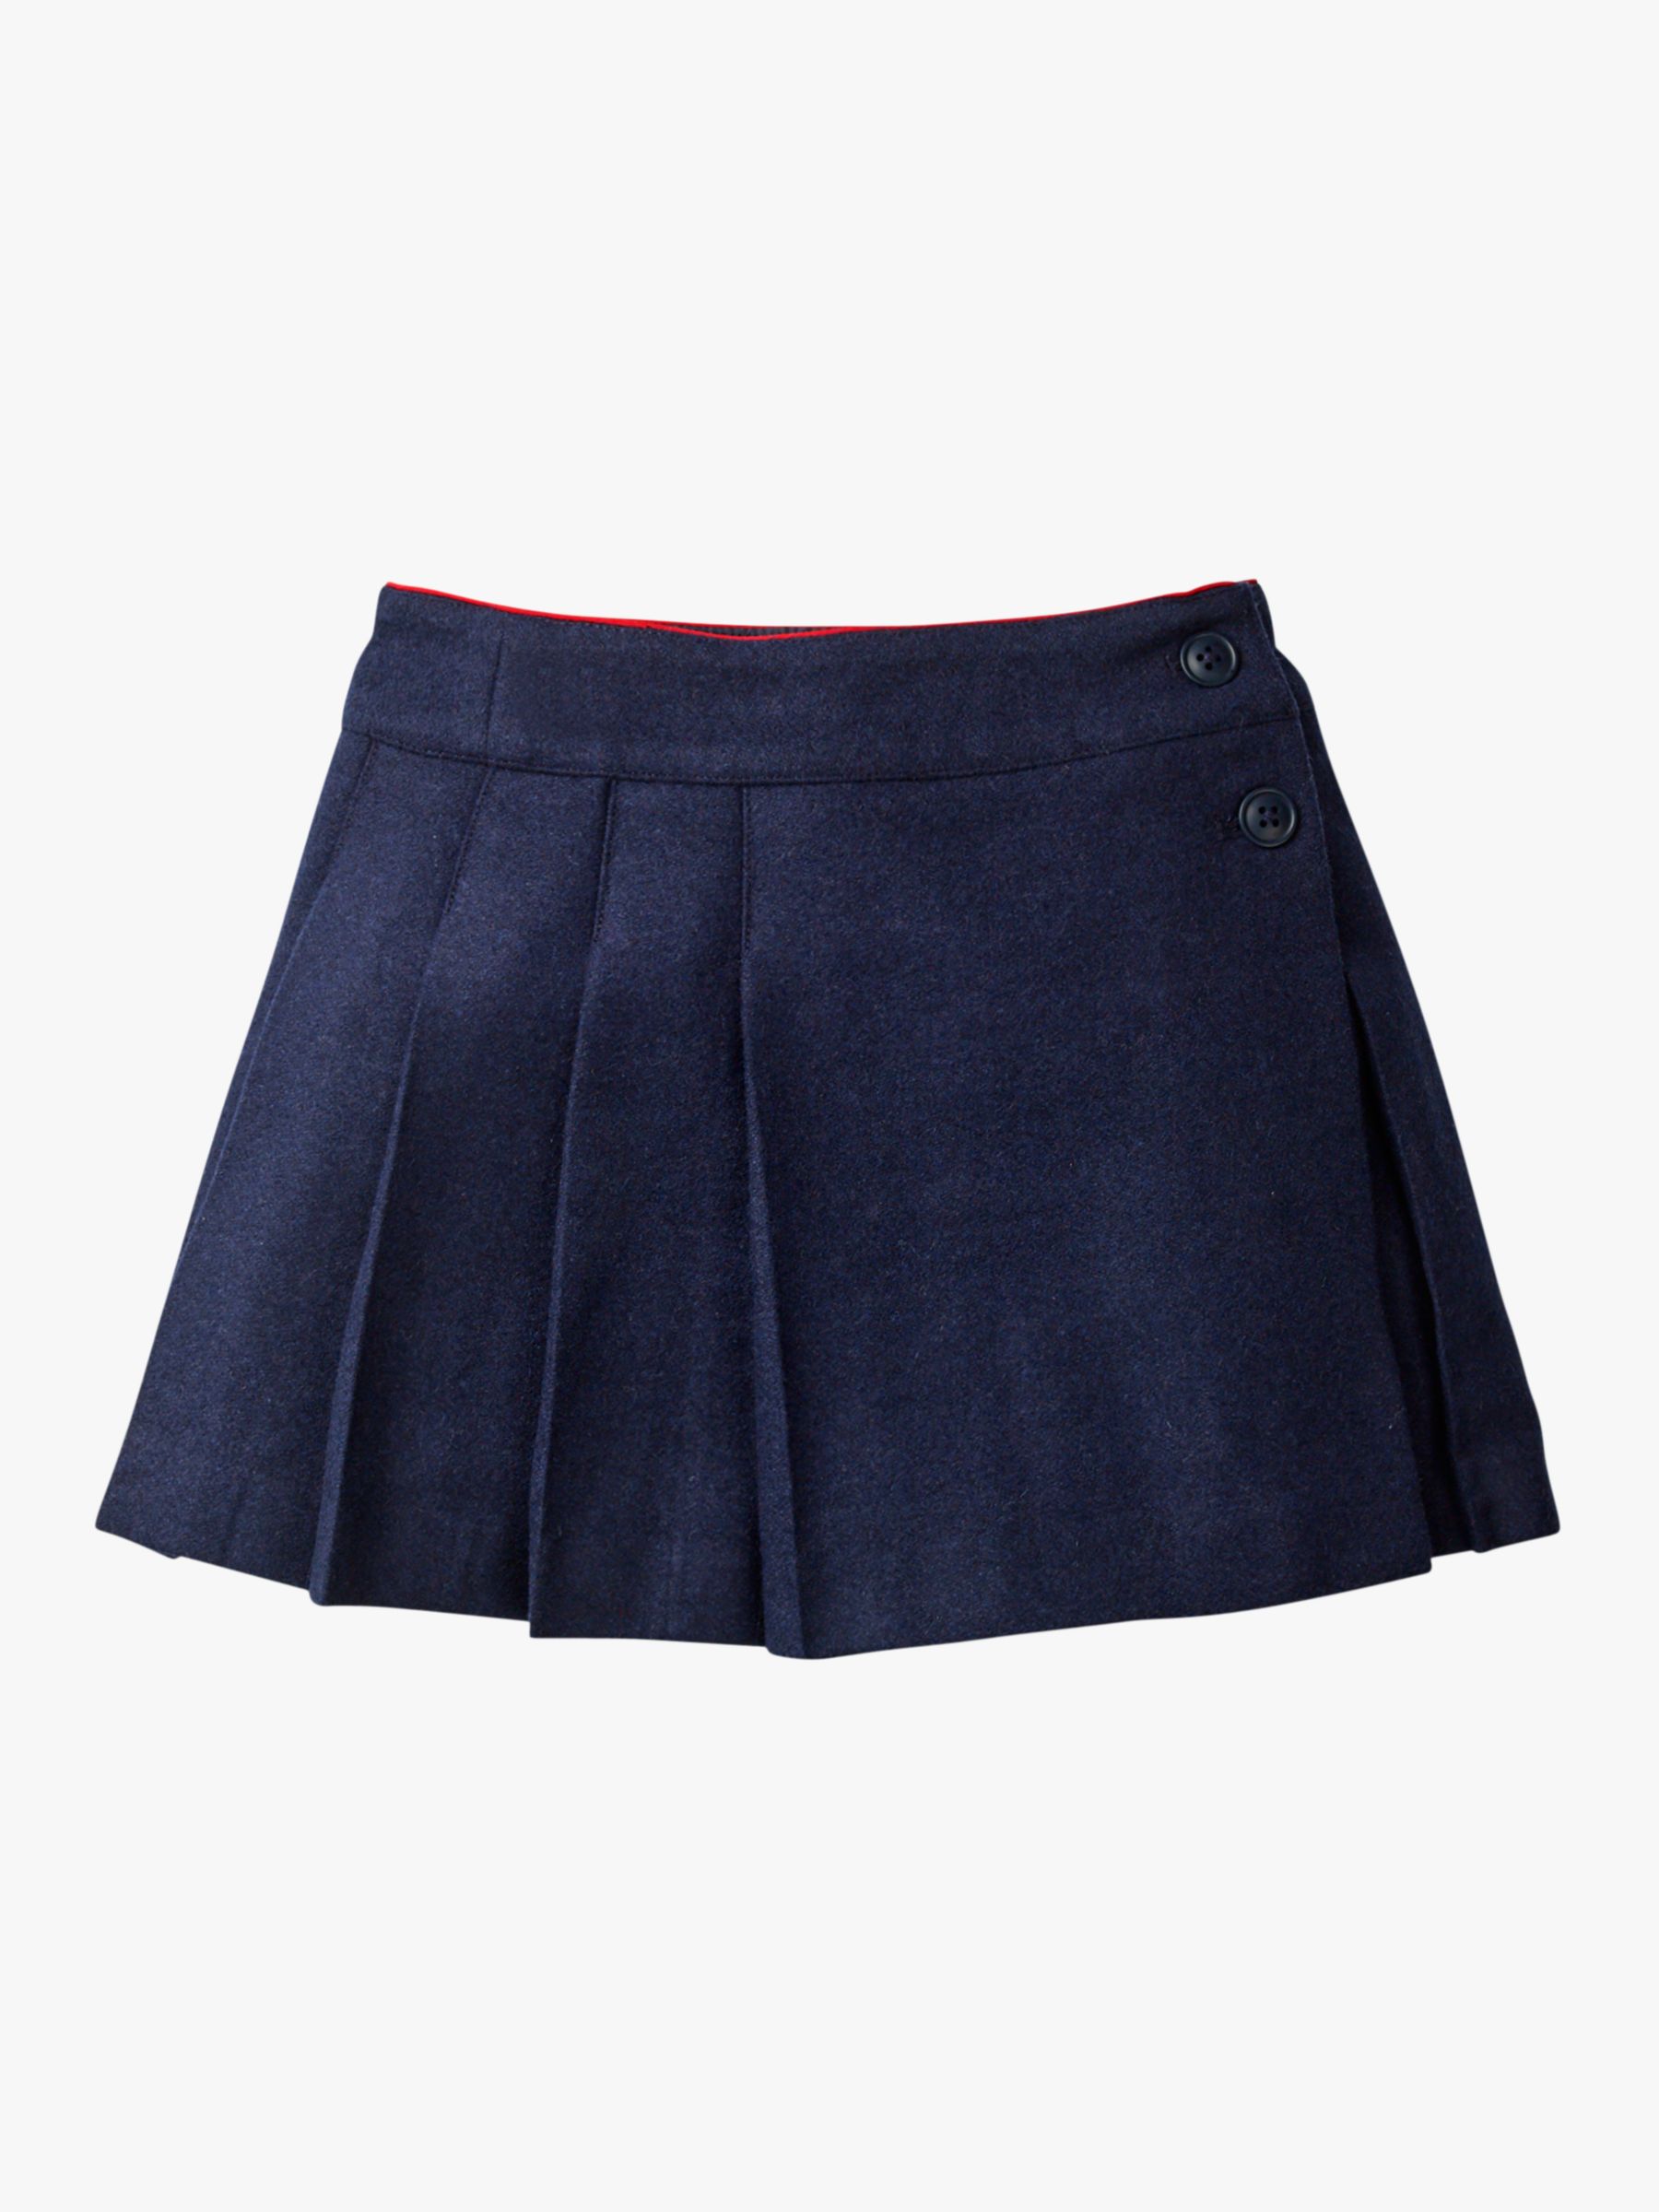 Mini Boden Girls' Wonderful Wool Kilt Skirt, Navy at John Lewis & Partners